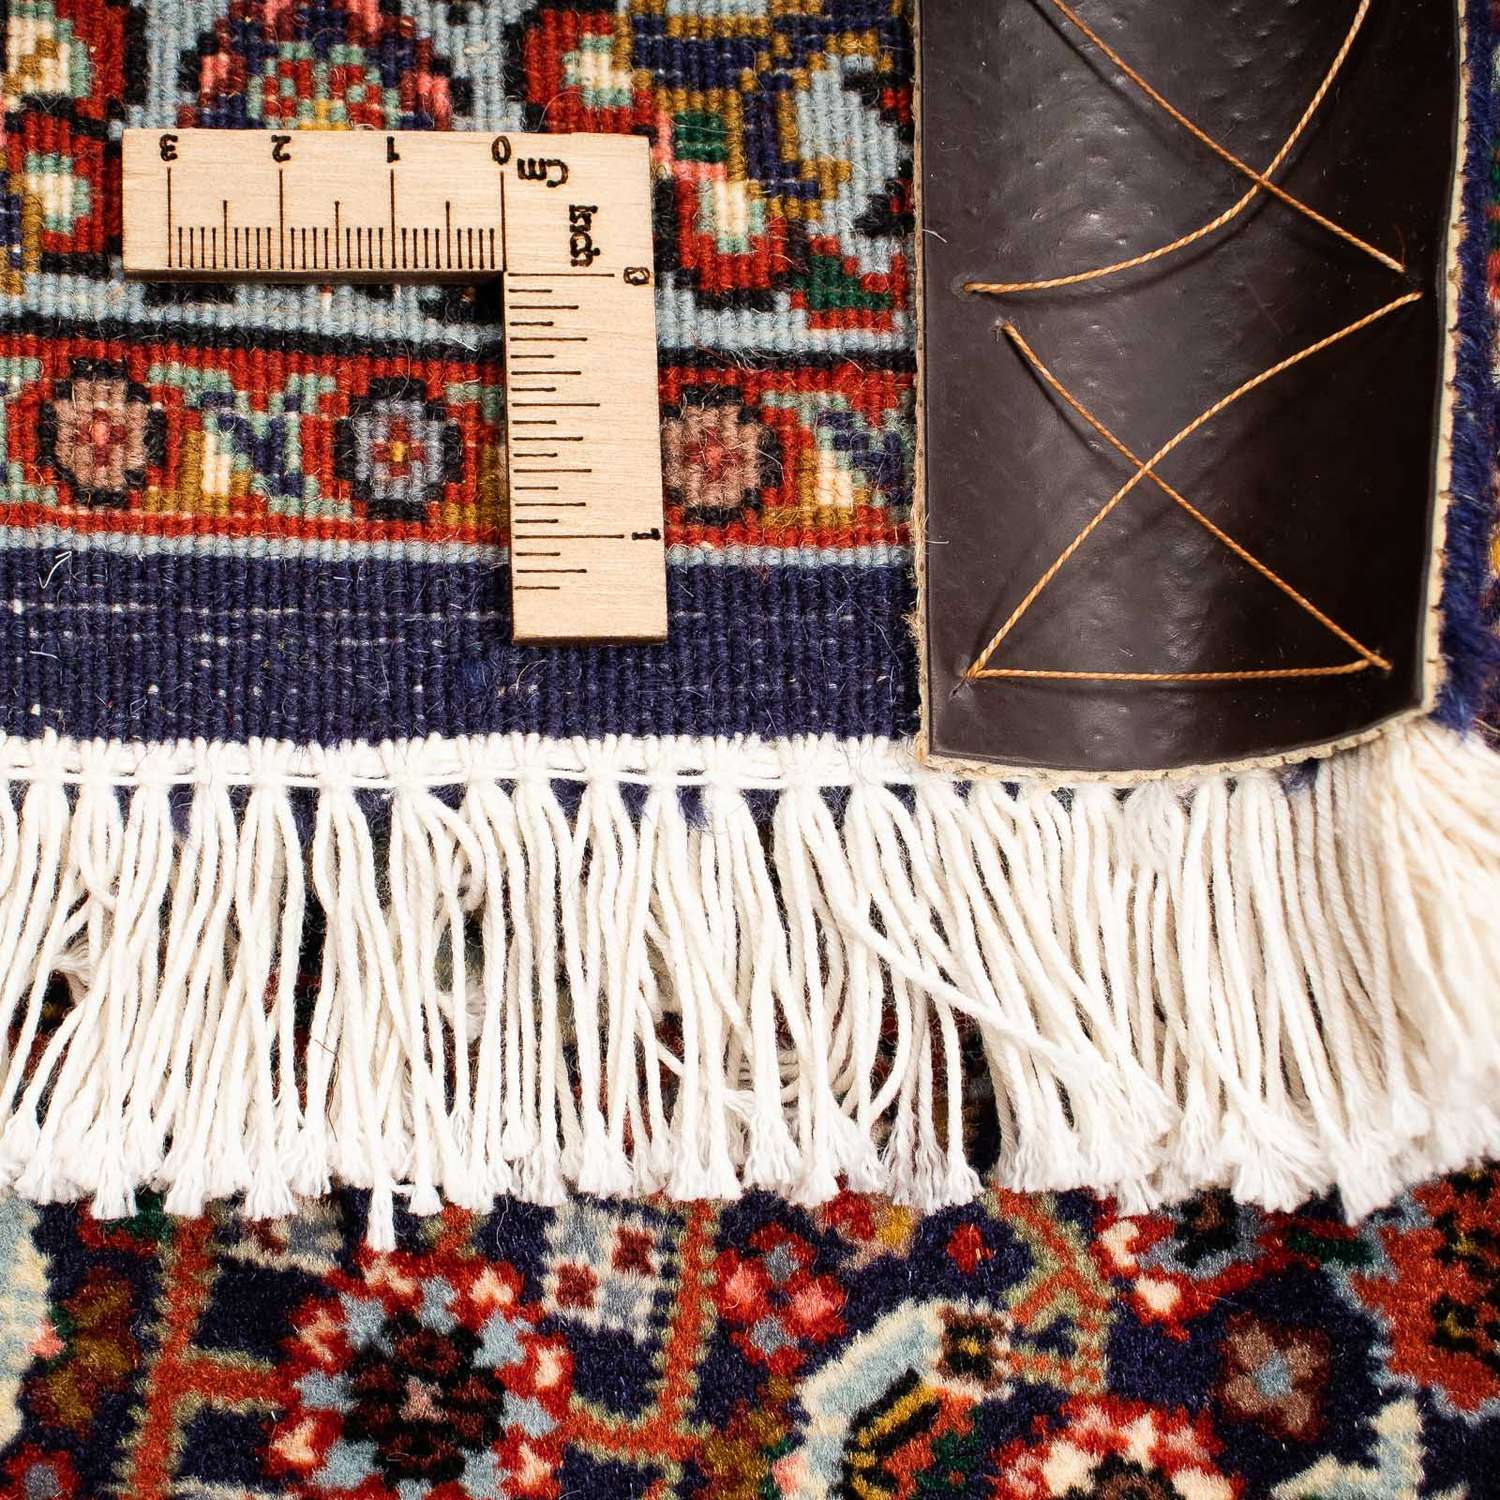 Perzisch tapijt - Bijar - 222 x 203 cm - bruin